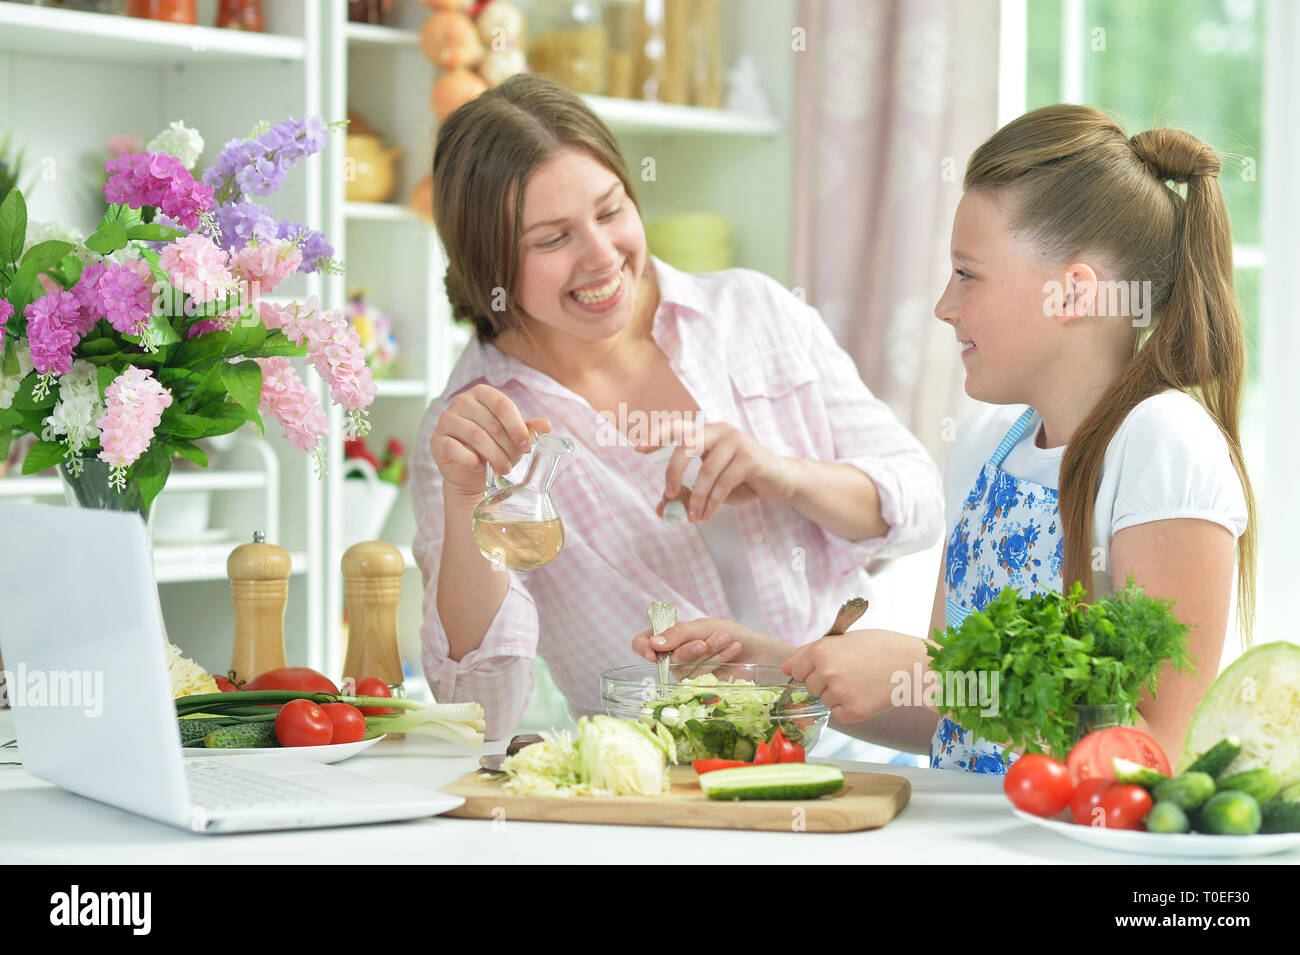 Portrait de funny girls préparer une salade fraîche Banque D'Images